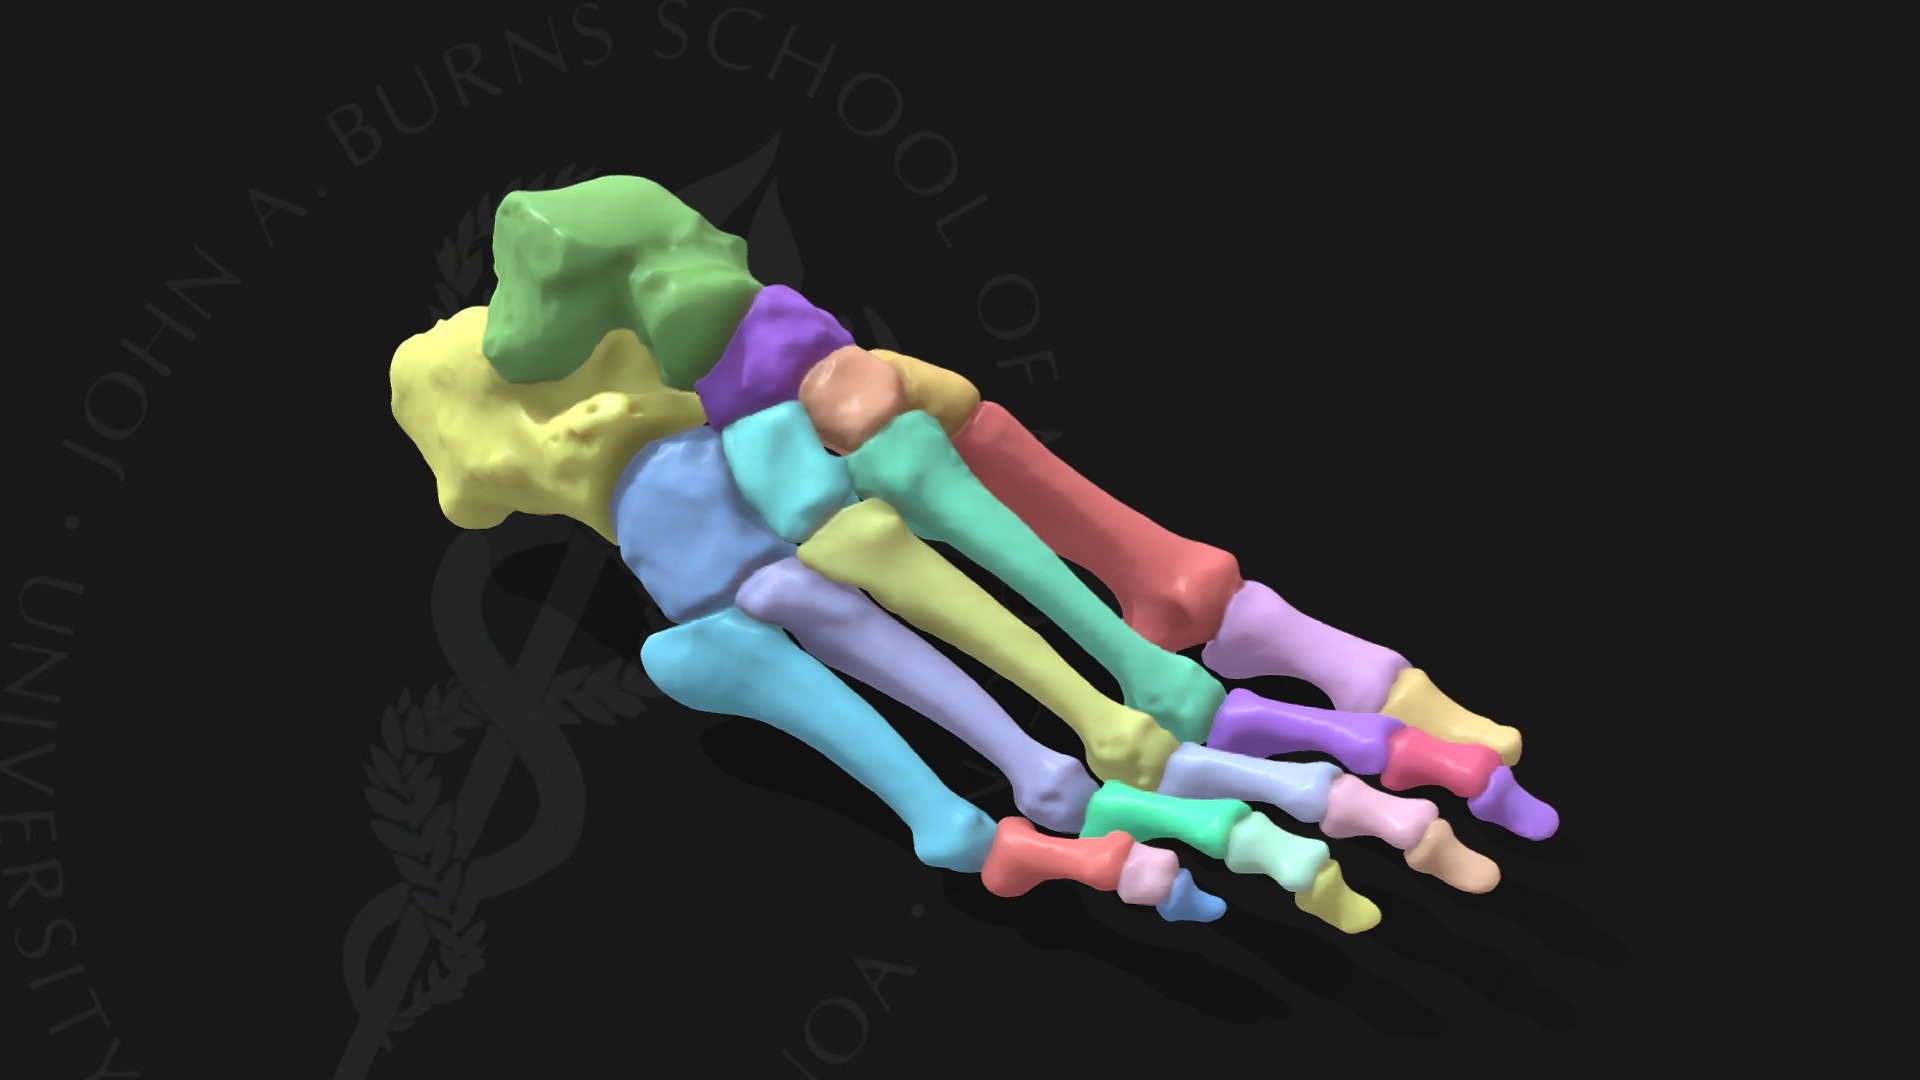 Foot Skeleton